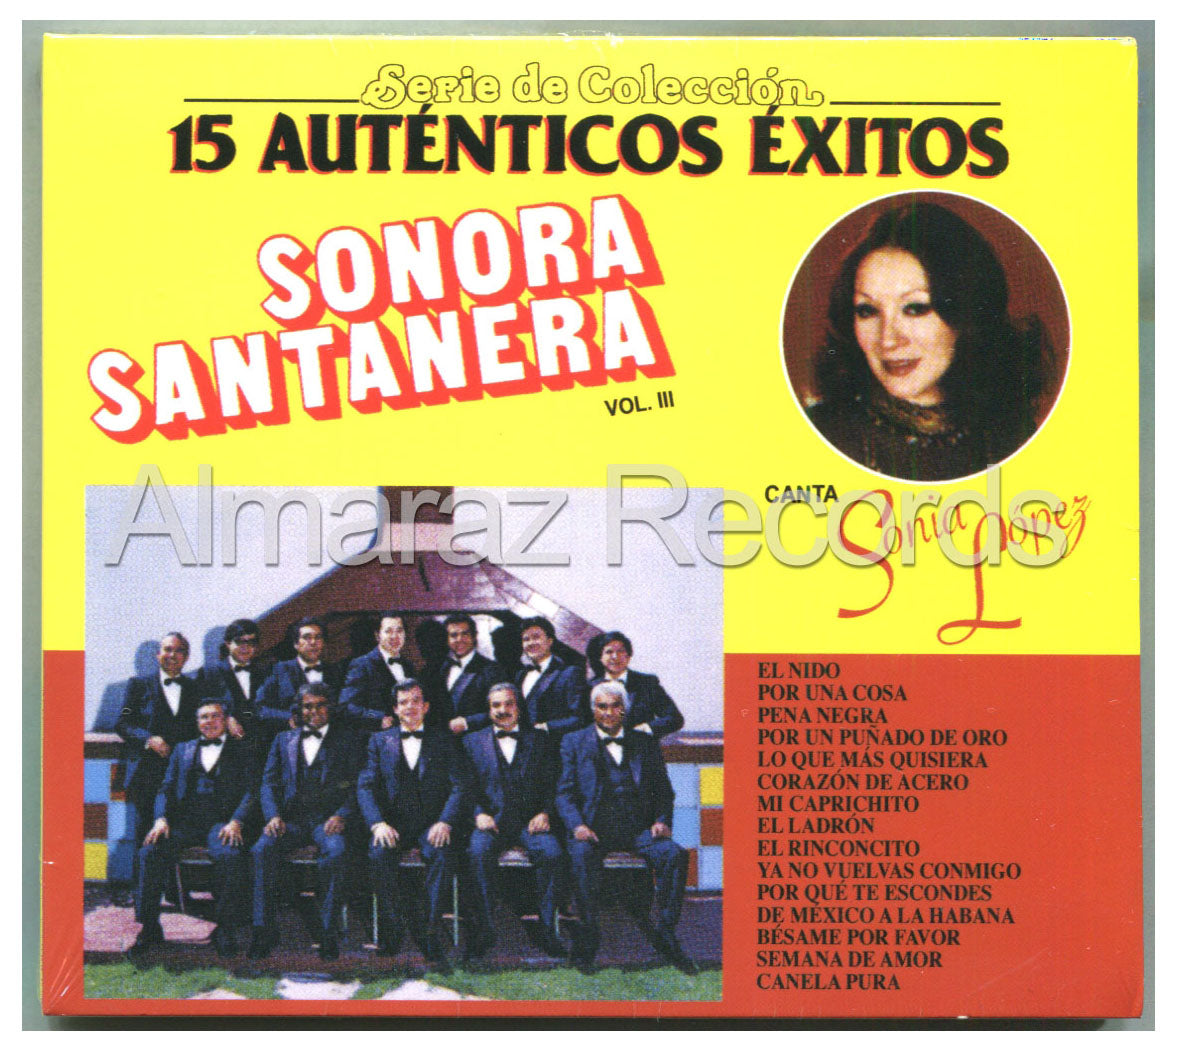 La Sonora Santanera 15 Autenticos Exitos Vol. III CD (2012 Digipak) - Almaraz Records | Tienda de Discos y Películas
 - 1